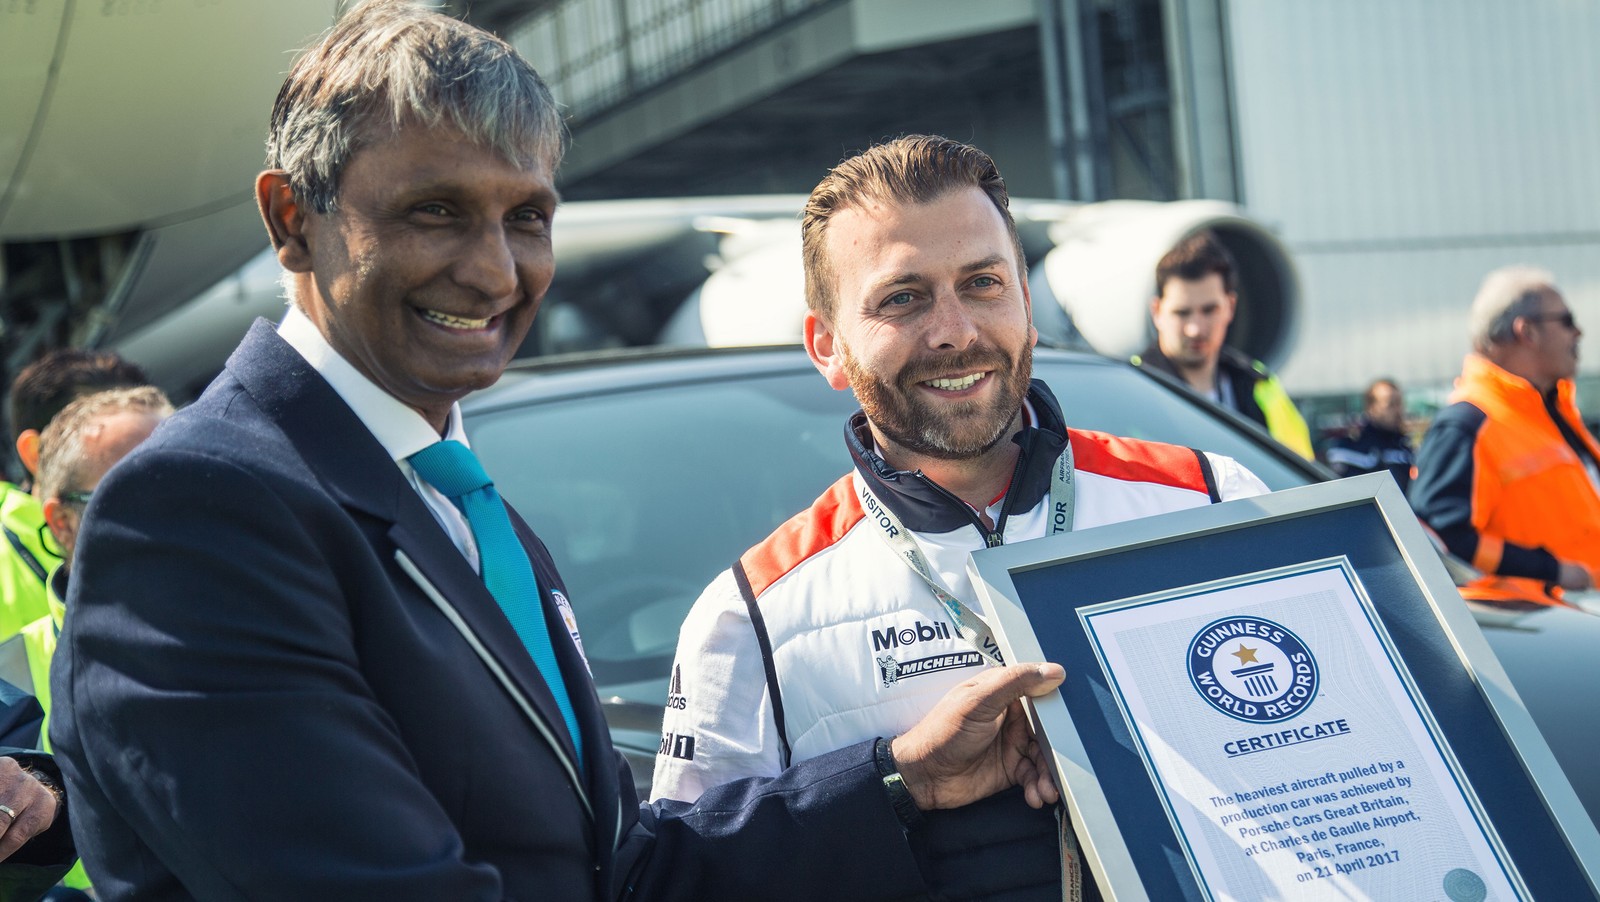 Técnico da Porsche Richard Payne foi o motorista e recebeu certificado do Guinness (Foto: Divulgação)